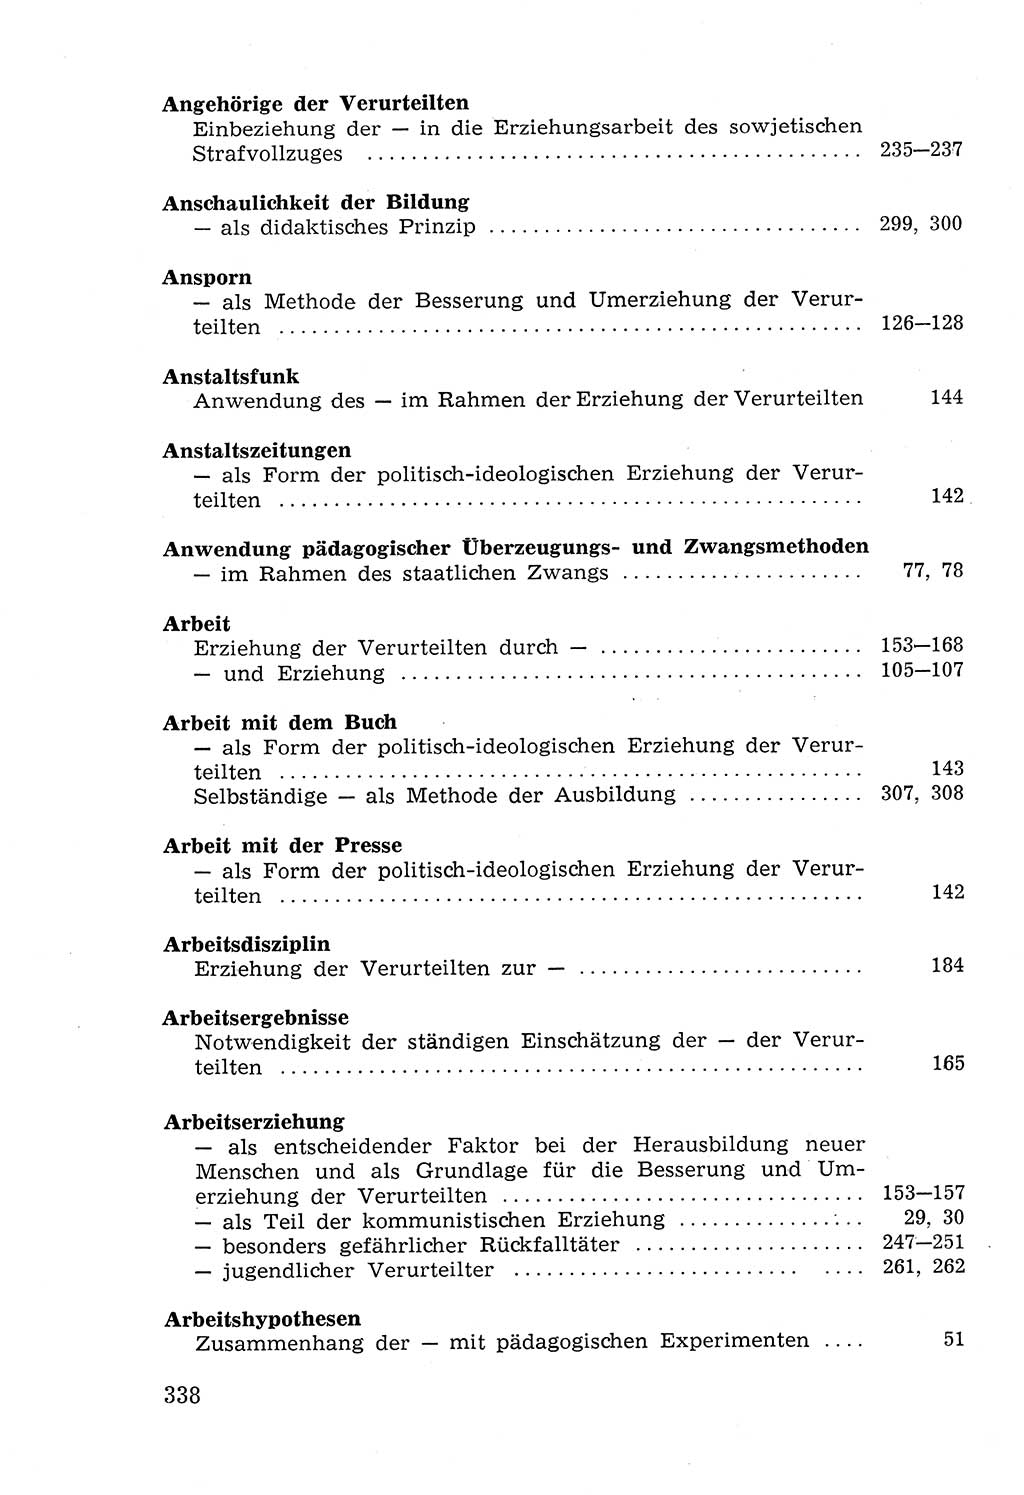 Lehrbuch der Strafvollzugspädagogik [Deutsche Demokratische Republik (DDR)] 1969, Seite 338 (Lb. SV-Pd. DDR 1969, S. 338)